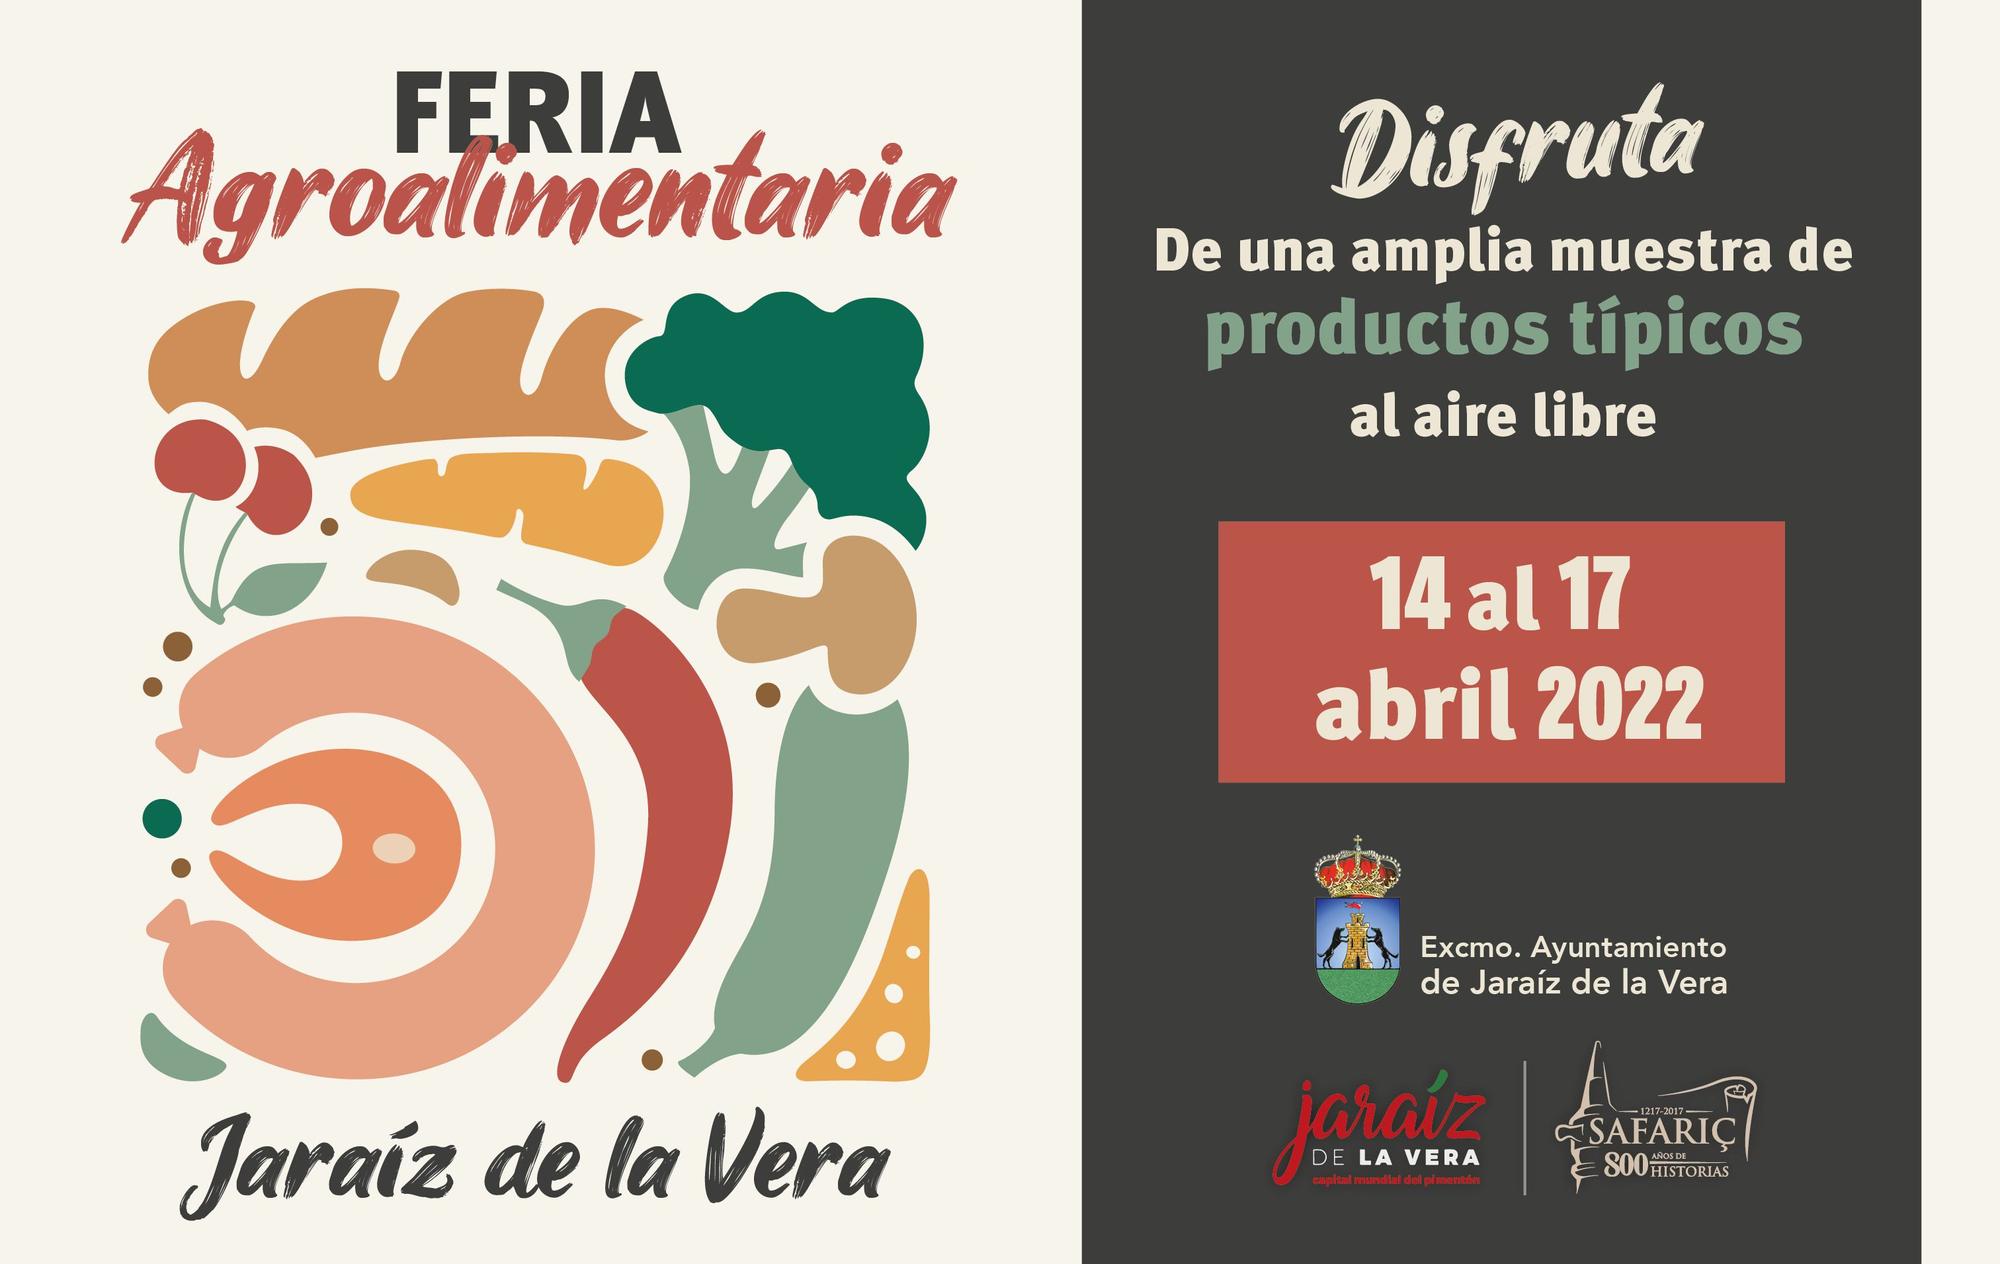 Cartel de la Feria Agroalimentaria de Jaraíz de la Vera.